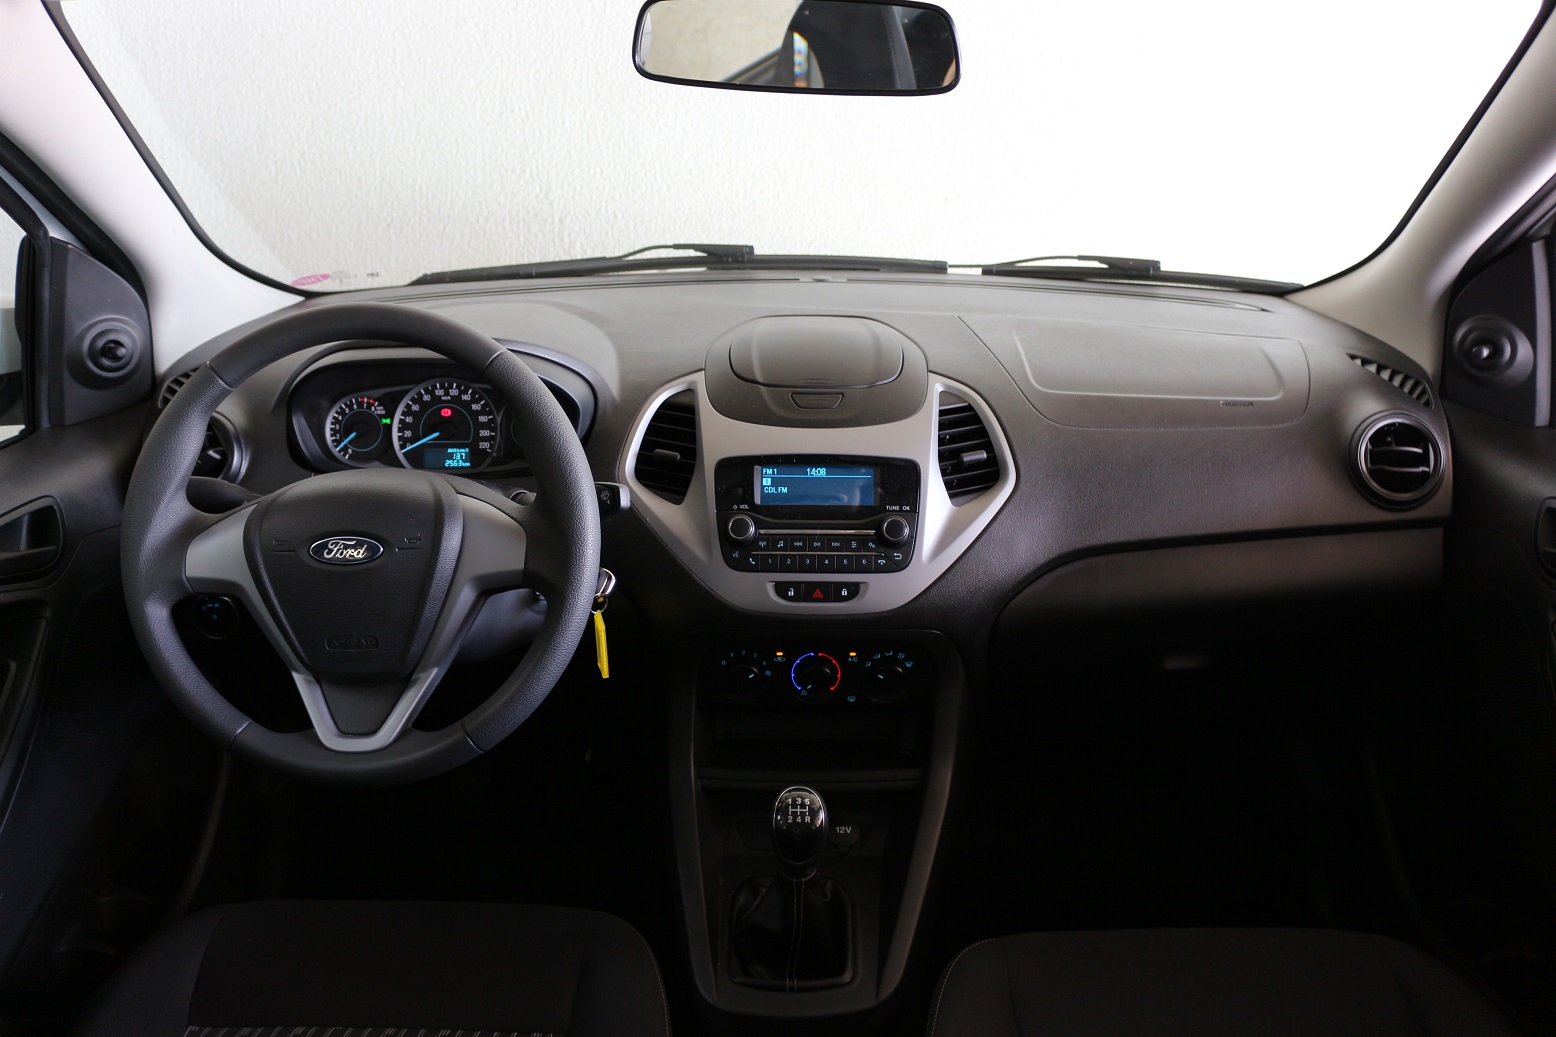 Ford Ka SE 1.0 mostra na avaliação do AutoPapo que tem o essencial como destaque